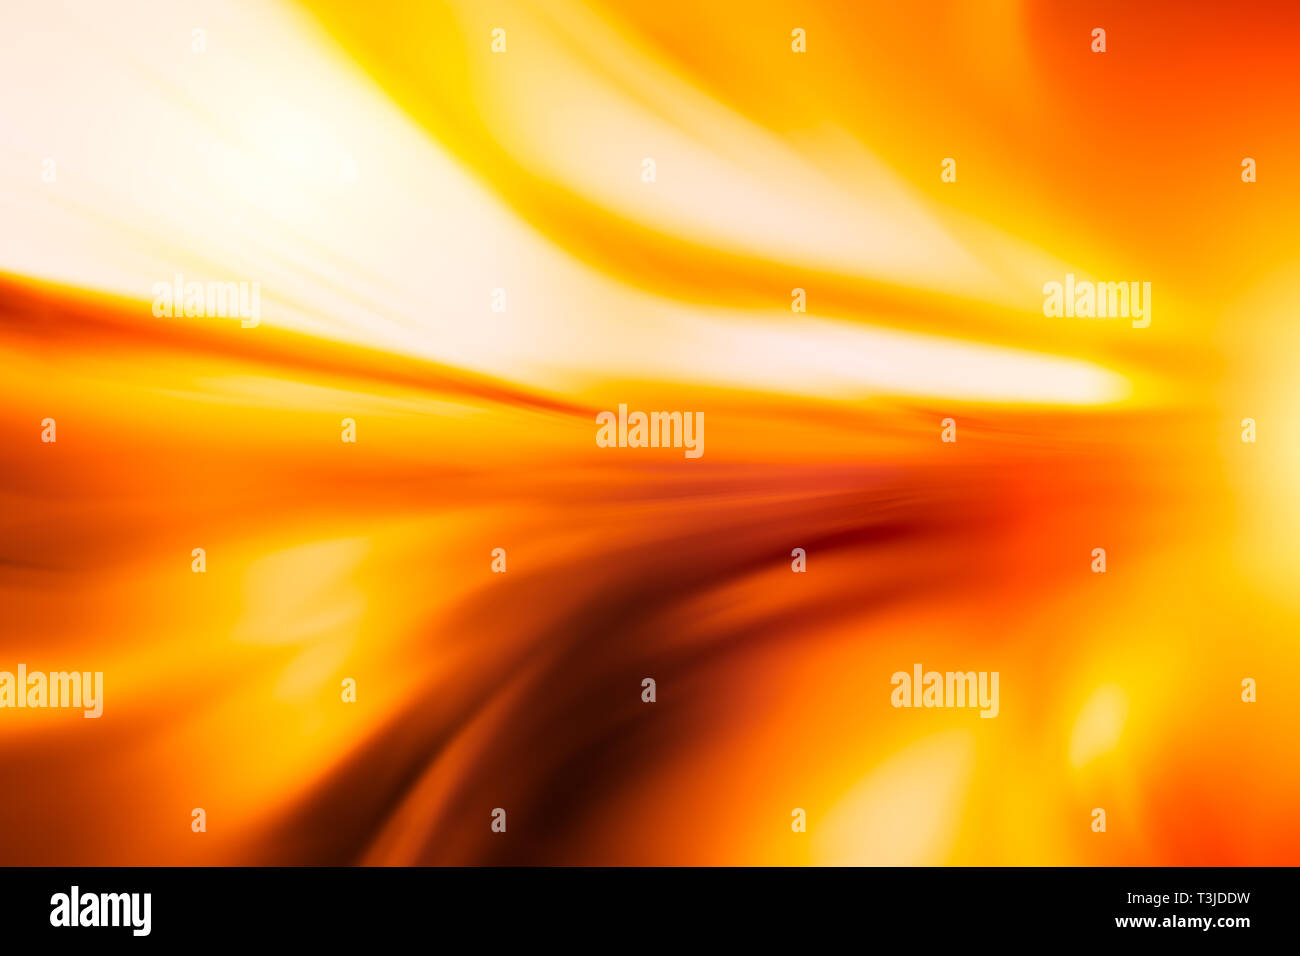 Fire hot alta velocità motion blur astratti per backgroun Foto Stock